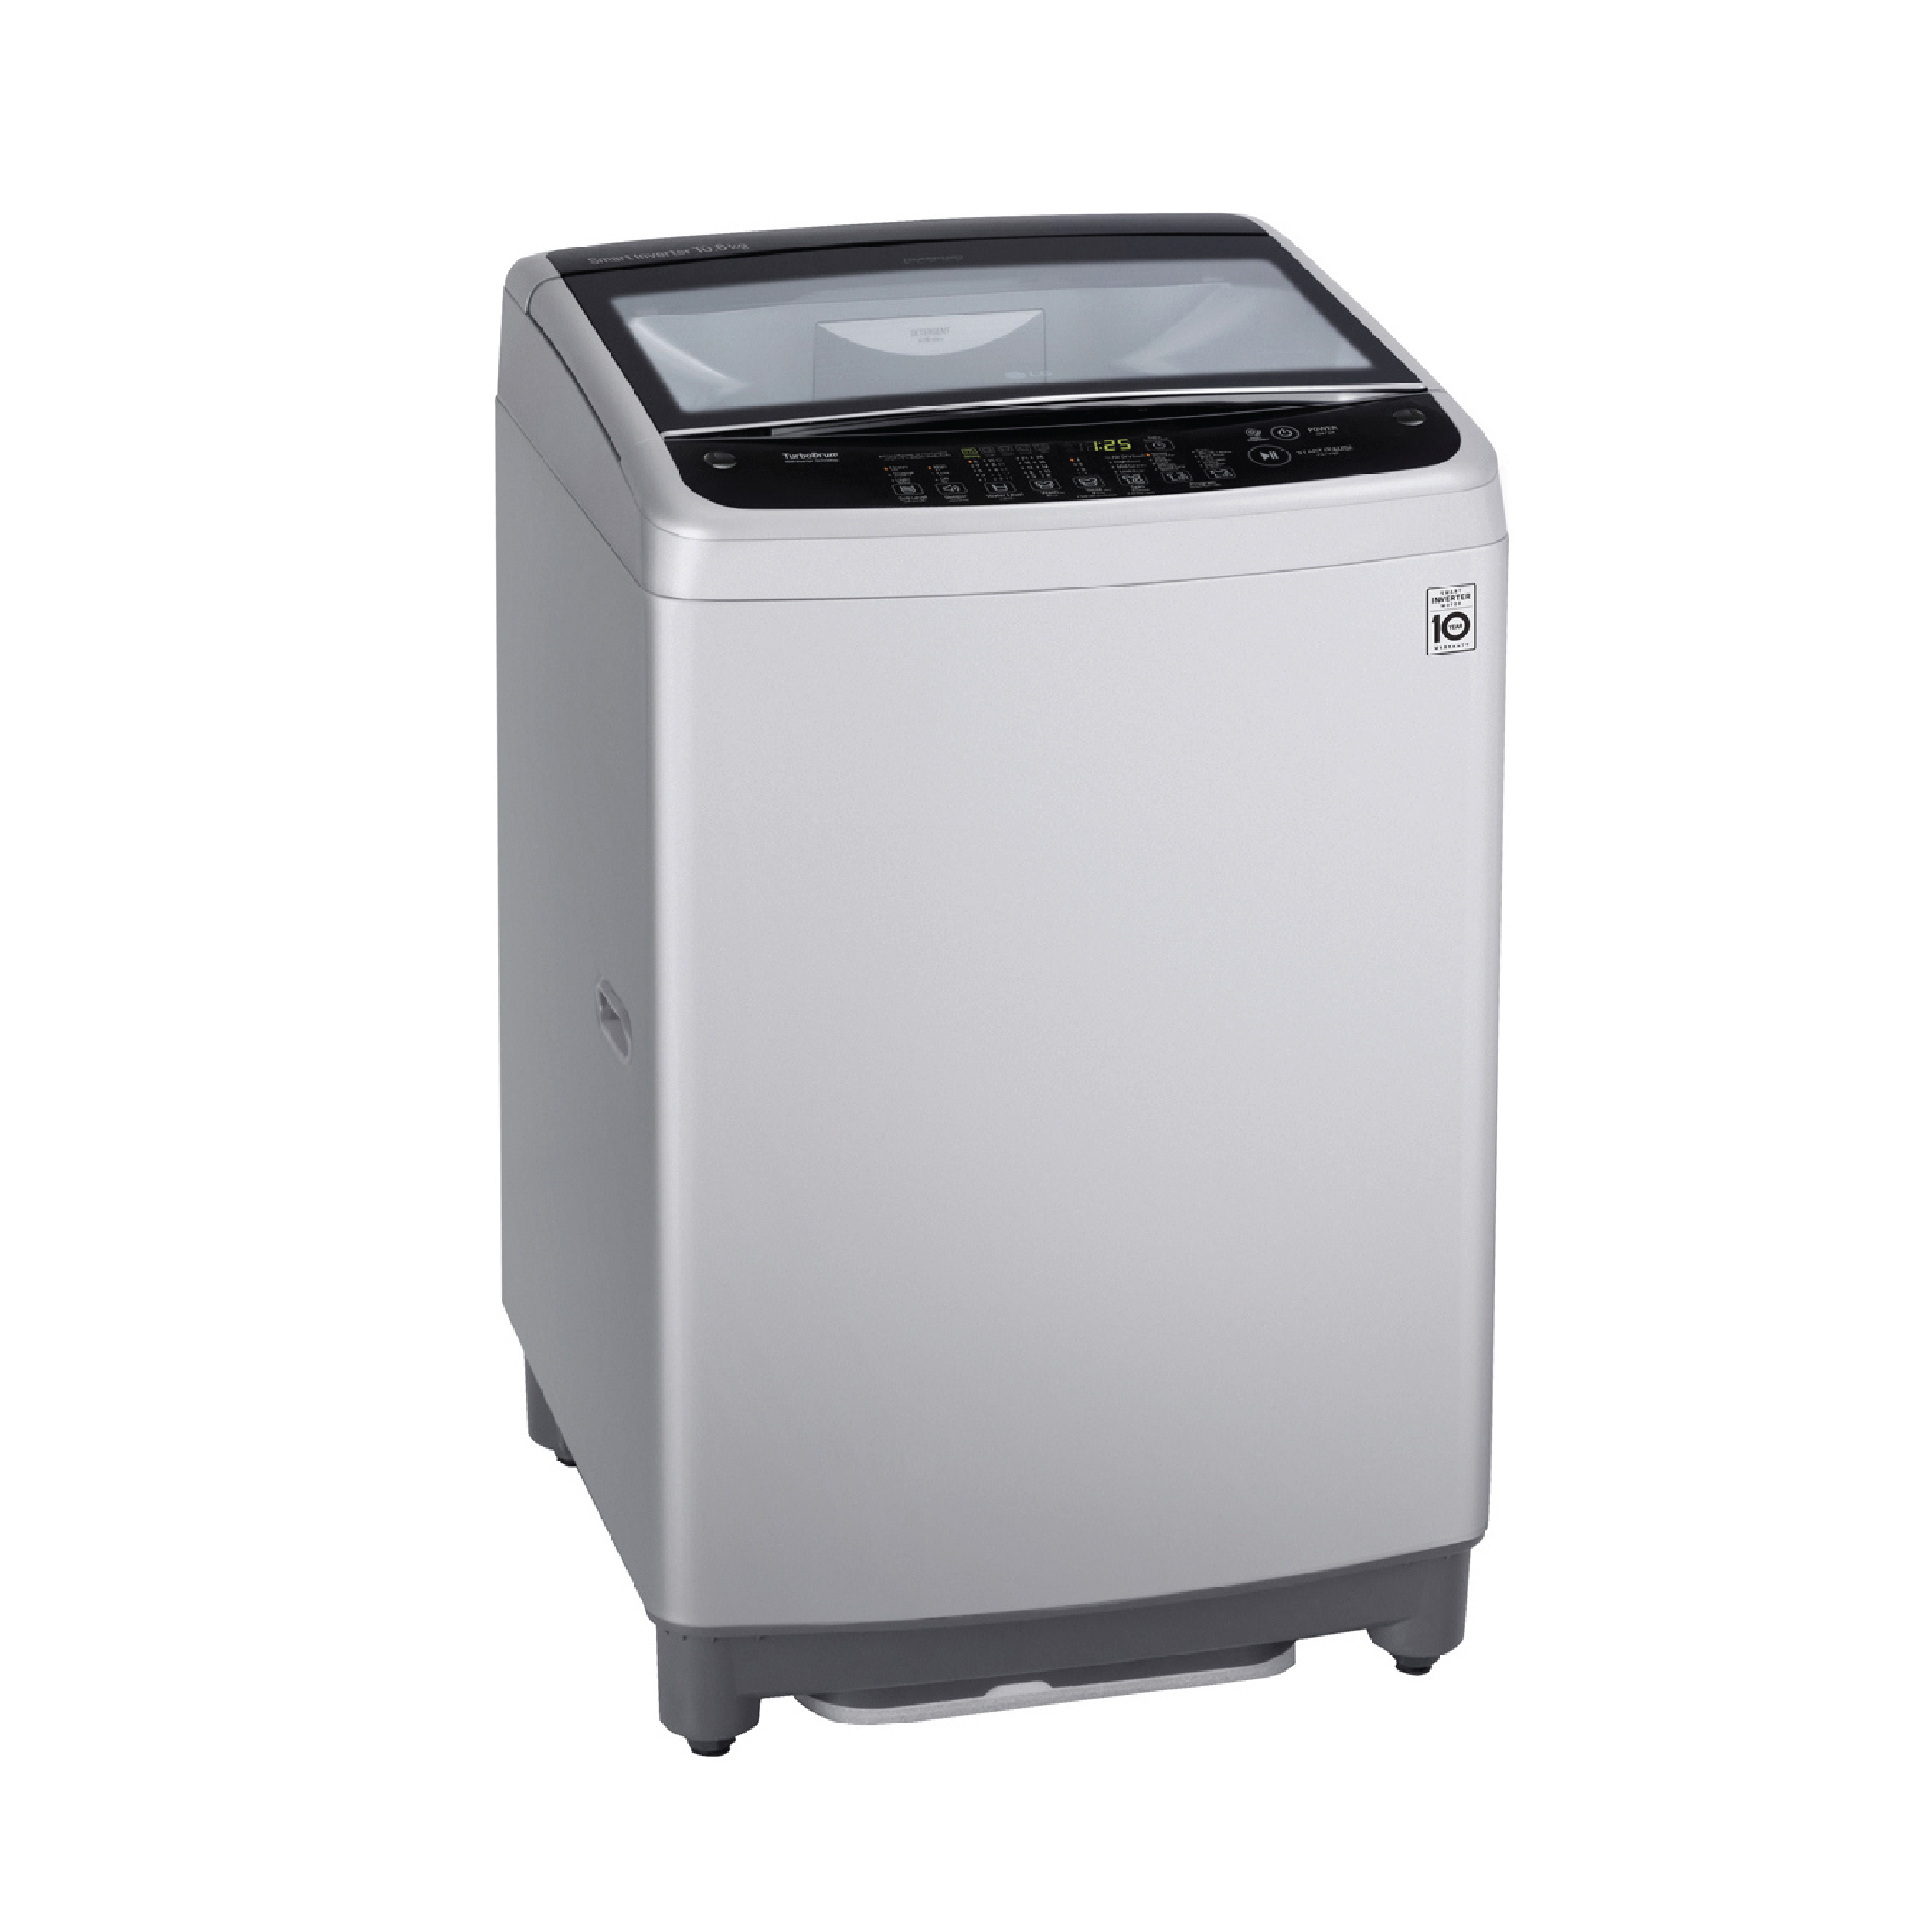 แนะนำเครื่องซักผ้าฝาบนระบบ Smart Inverter จาก LG รุ่น T2310VSAM ที่ประหยัดพลังงานกว่าเดิม